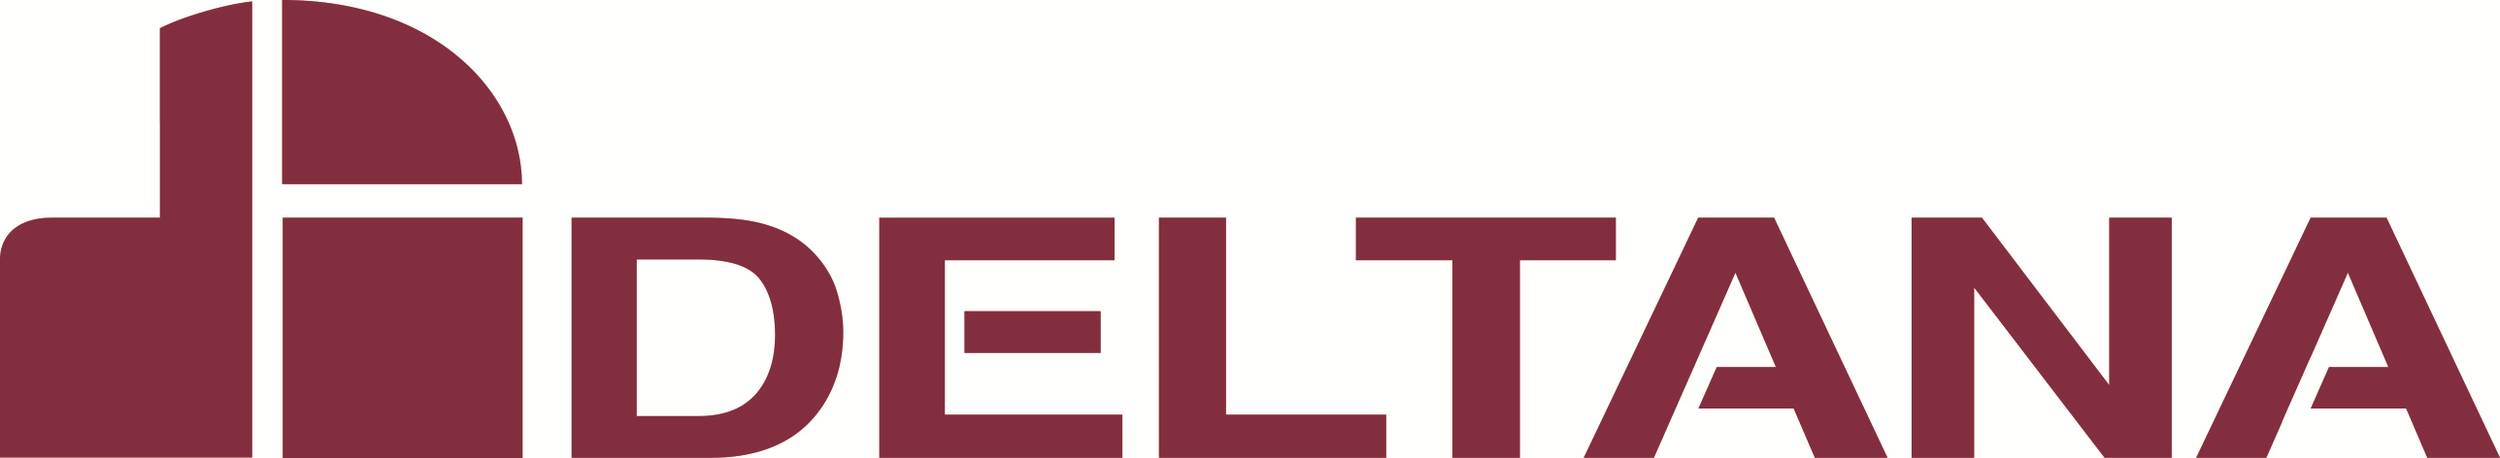 deltana-logo-cmyk.png